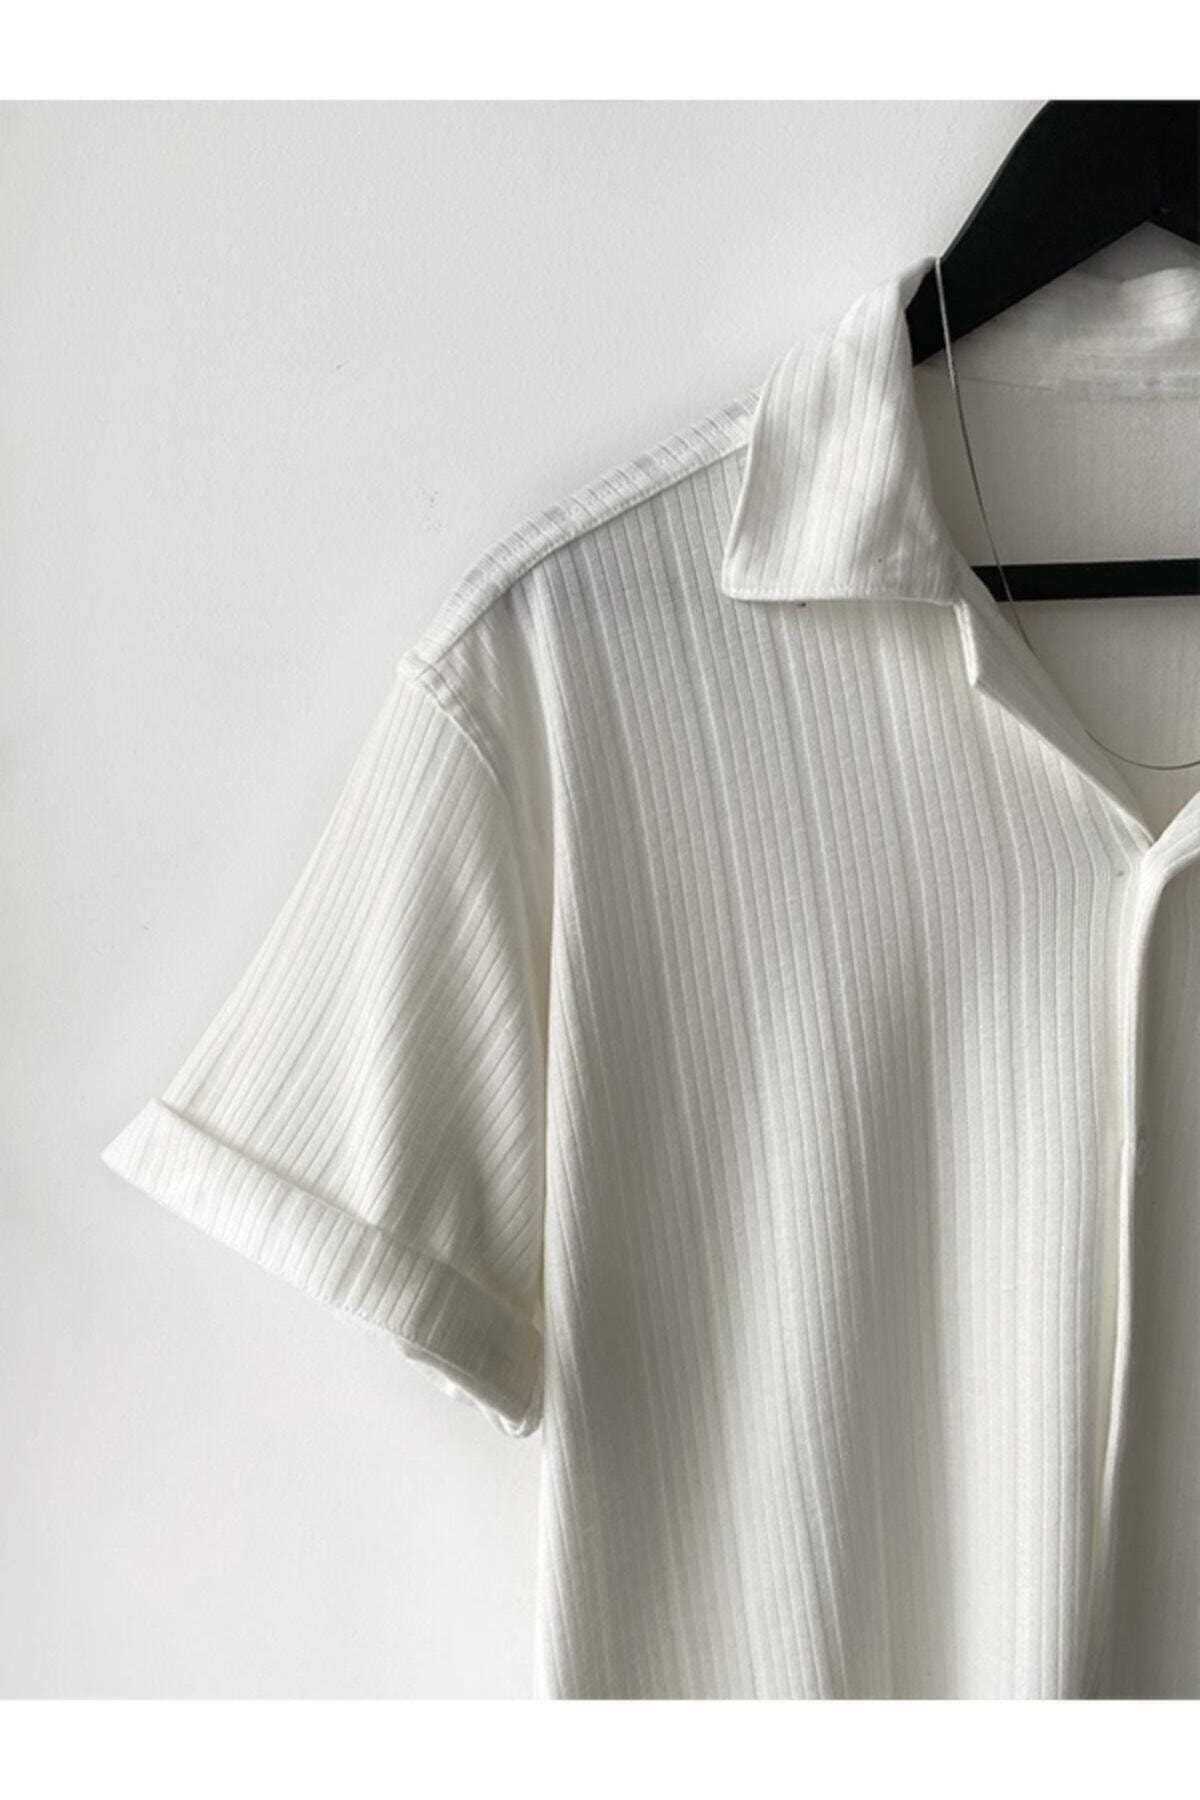 پیراهن آستین کوتاه مردانه از ترکیه برند MARRAKECH رنگ سفید ty95904475